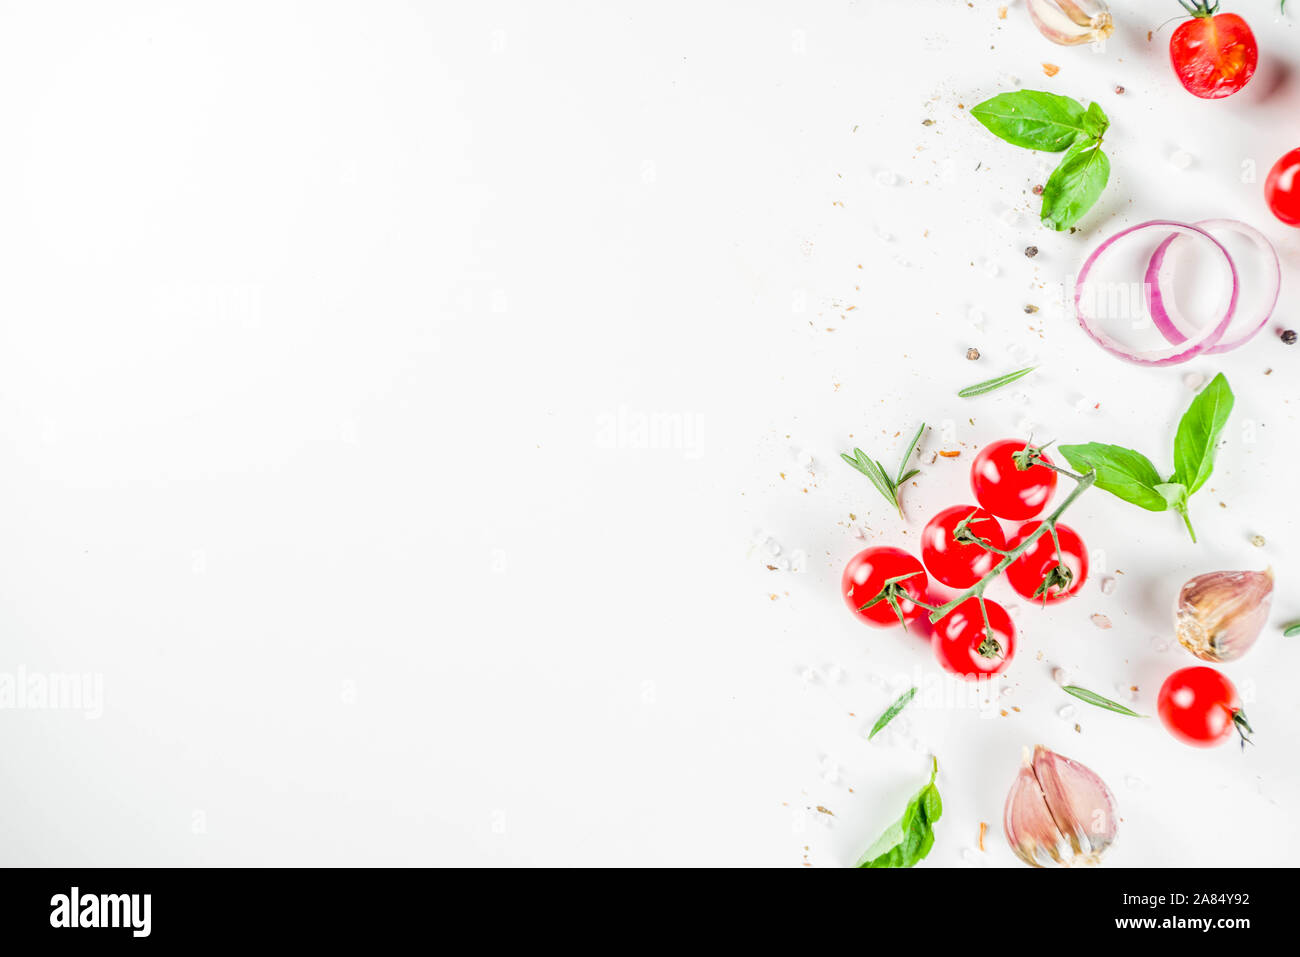 Các loại thảo mộc đậm chất Việt Nam được dùng trong ẩm thực và y học cổ truyền hiện đang được khai thác hết sức sáng tạo trong các món ăn đầy màu sắc, vị ngon và hương thơm đặc trưng. Hãy cùng khám phá những bí quyết ẩm thực tuyệt vời từ các loại thảo mộc đặc biệt này qua hình ảnh đẹp mắt.